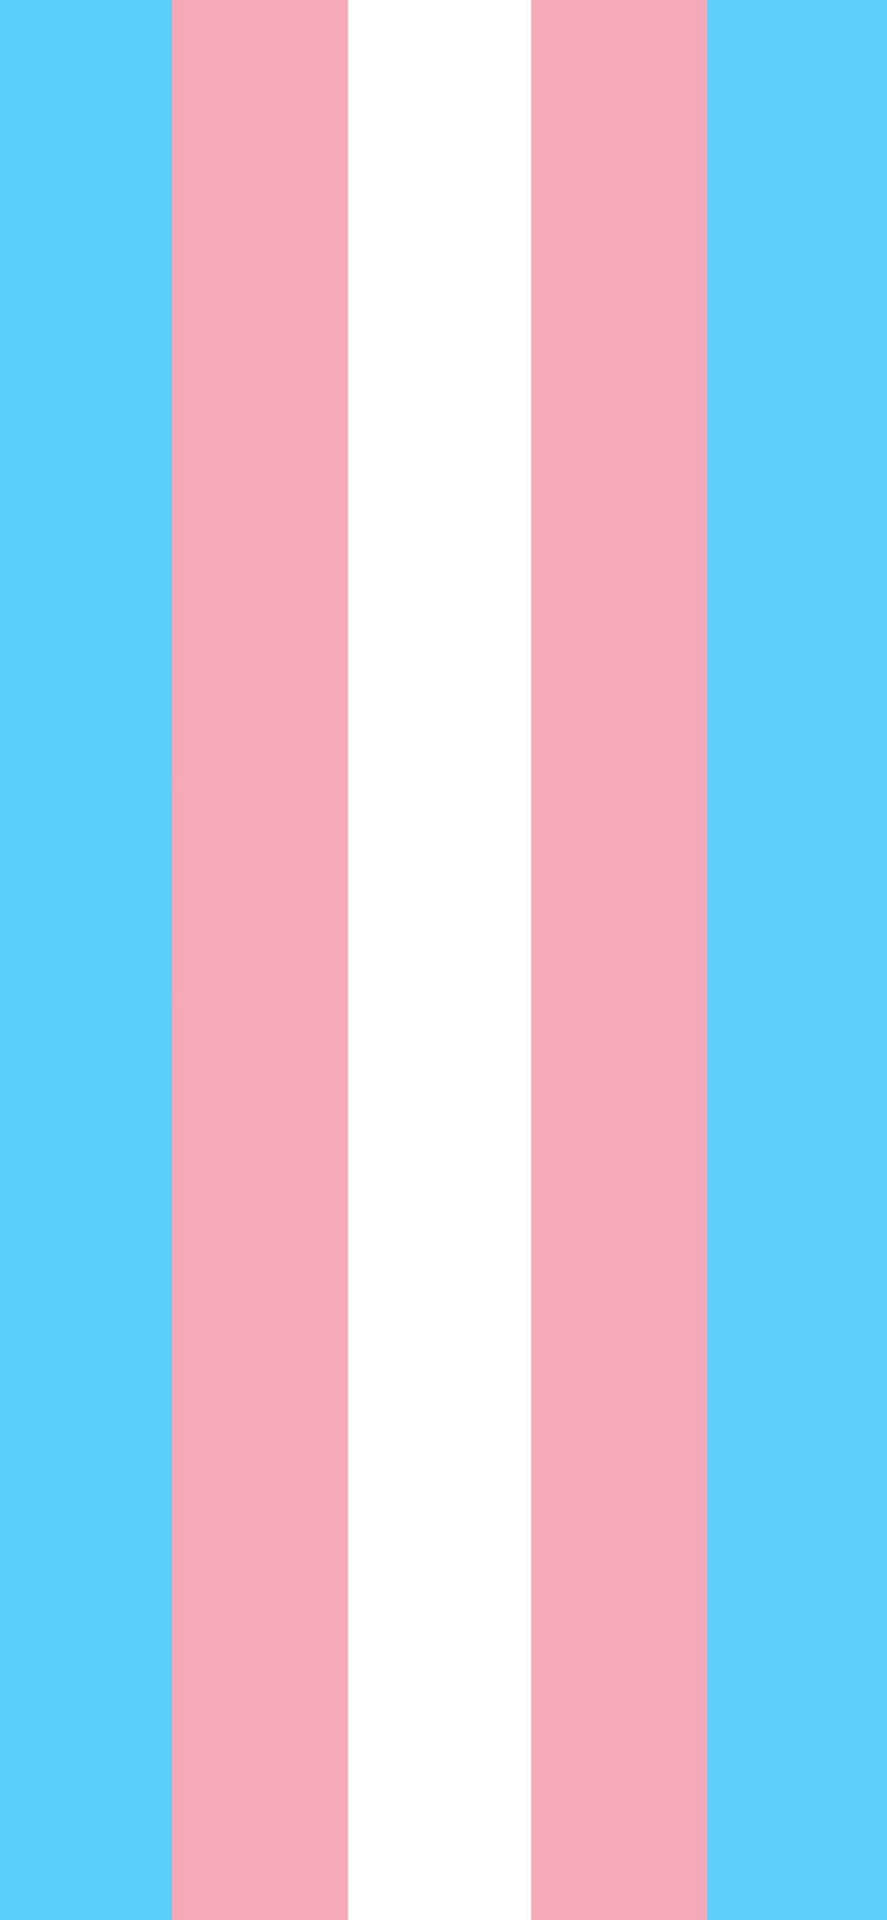 Trans Flag 1242 X 2688 Wallpaper